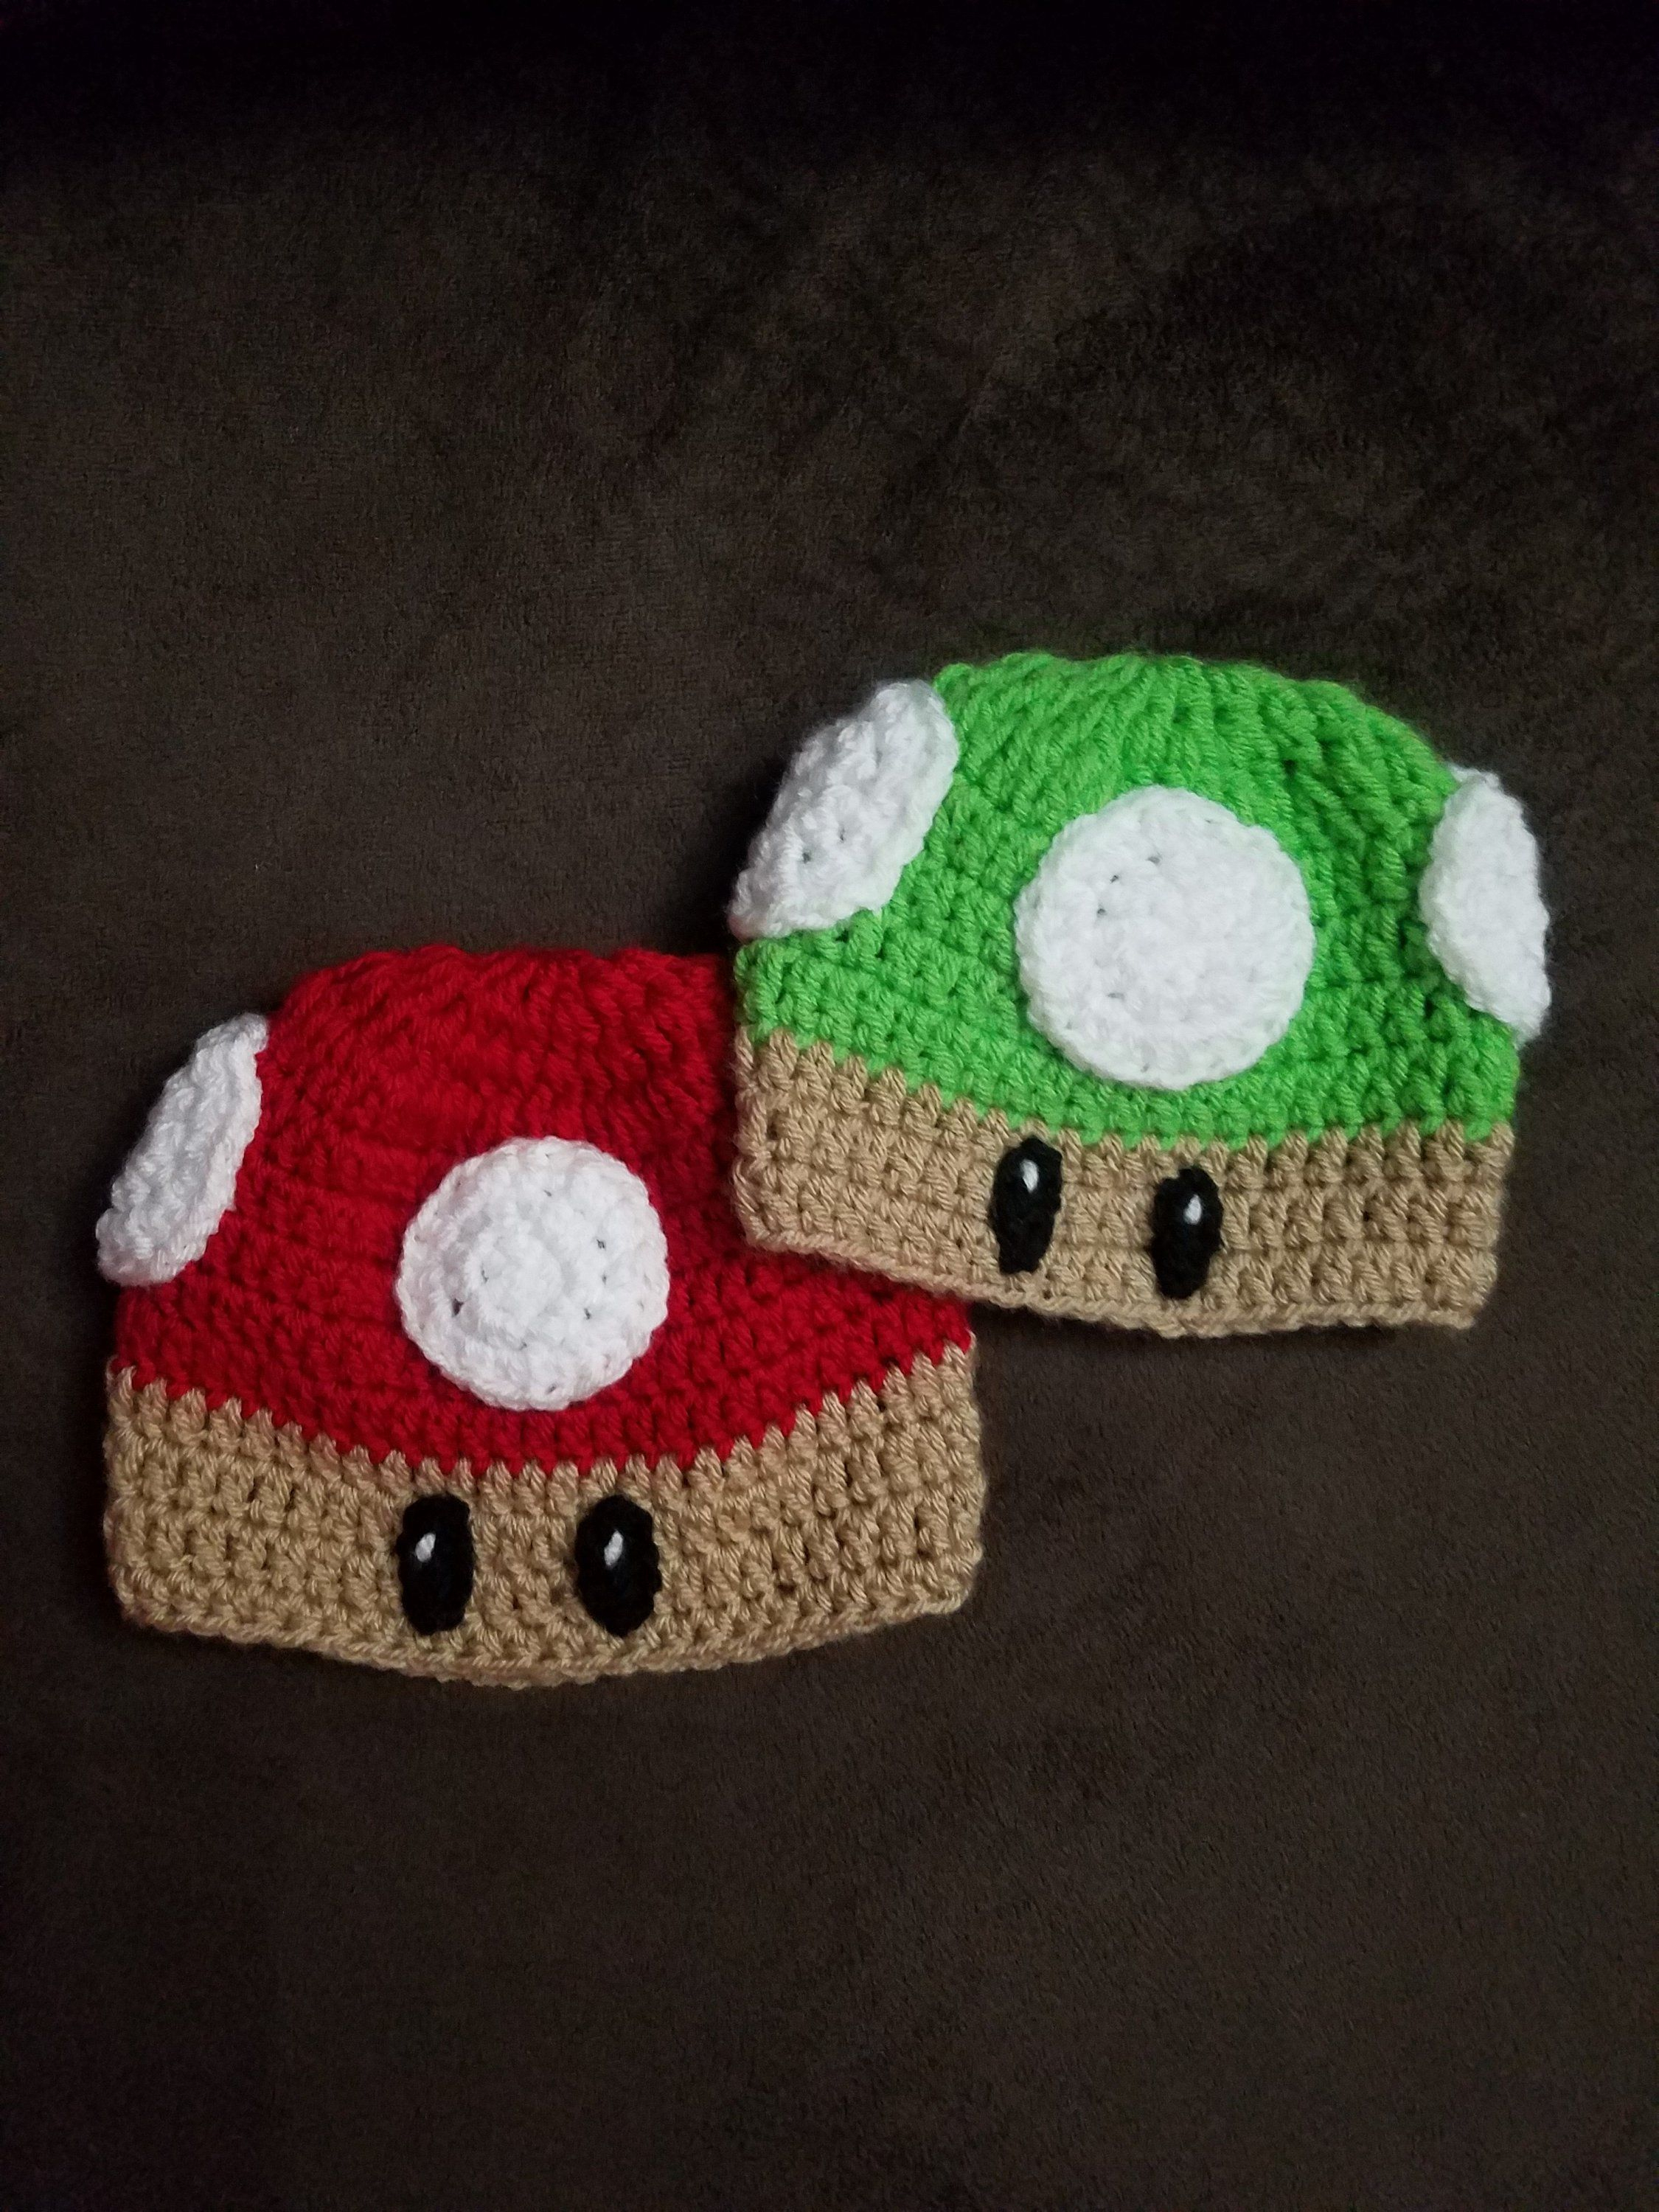 Mario Hat Crochet Pattern Crochet Super Mario Inspired Mushroom Hat Mario Hat Crochet Hat